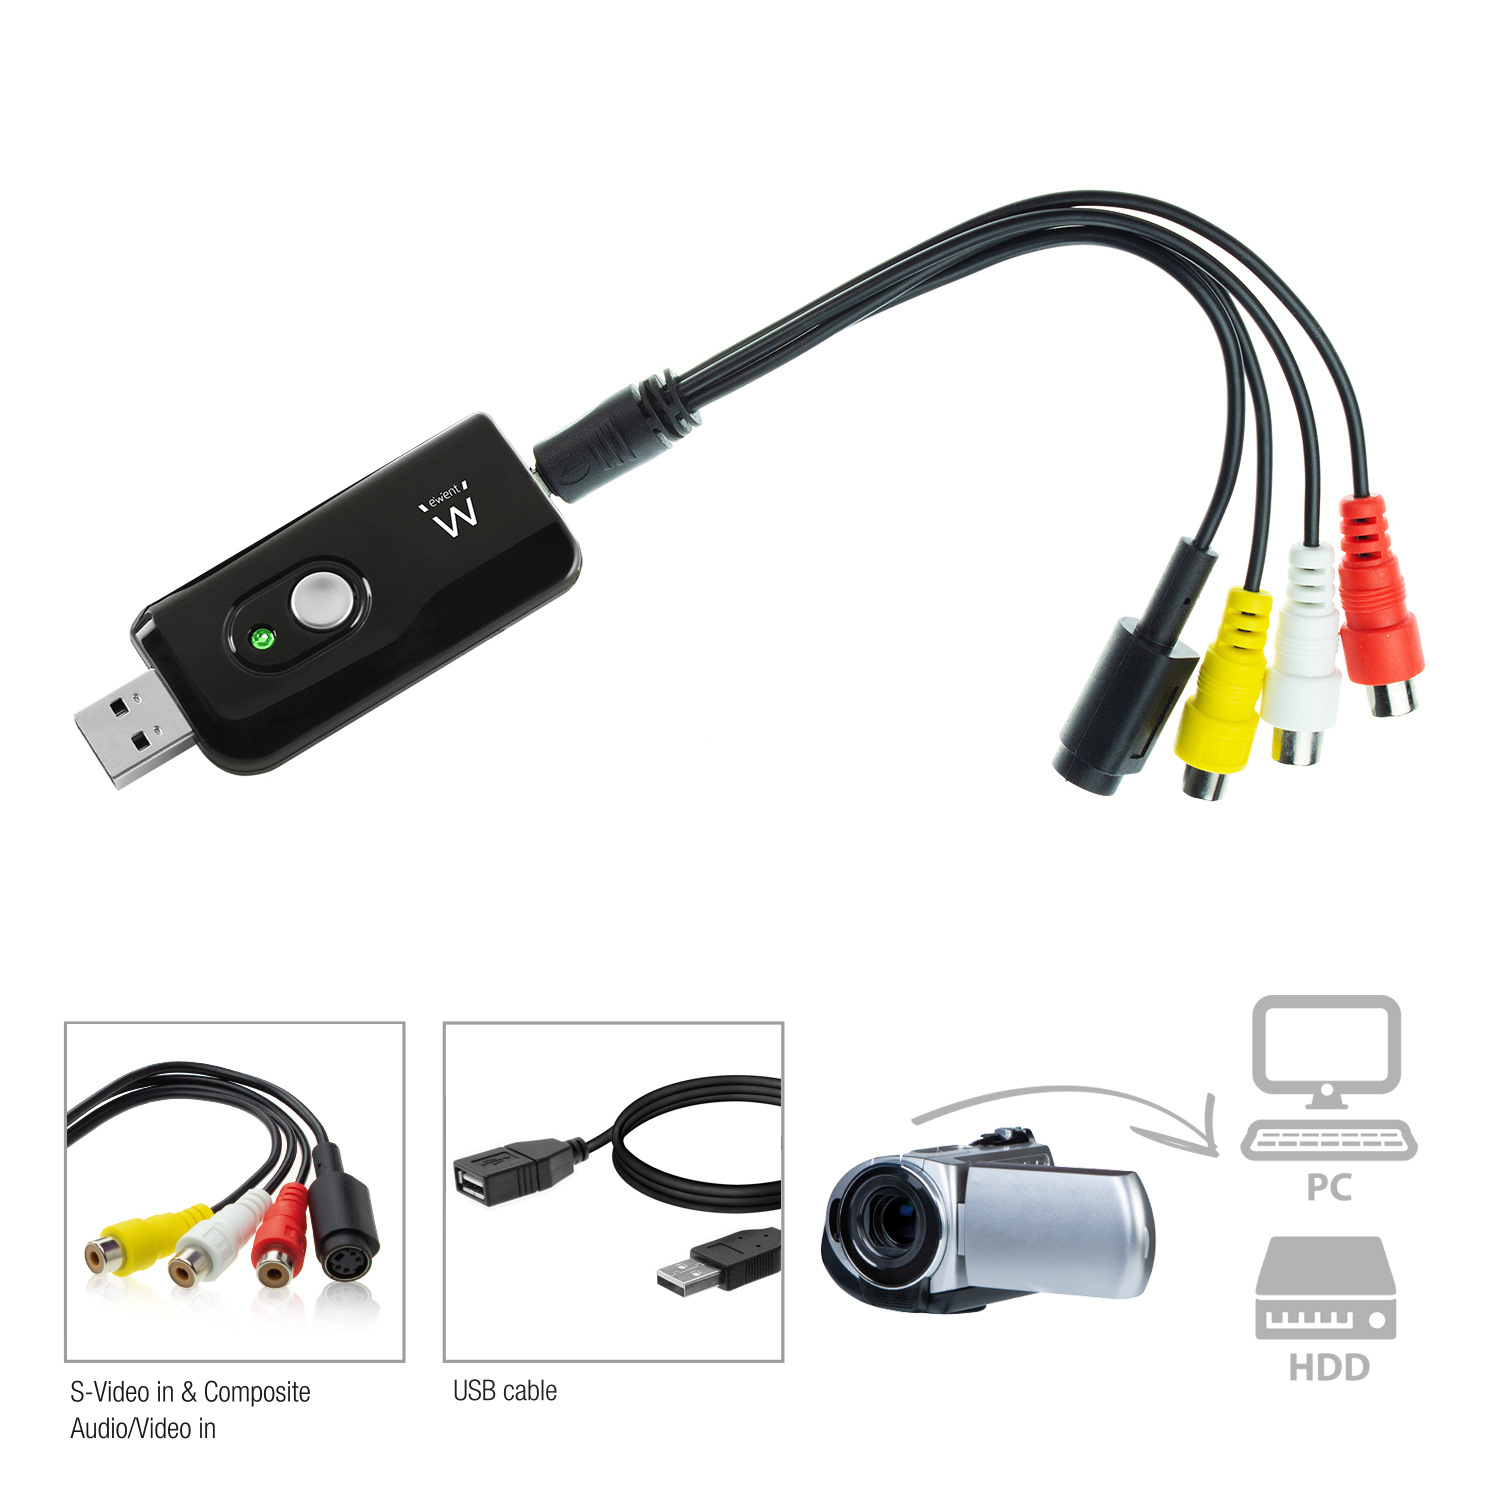 Ewent USB Video grabber met software, EW3707